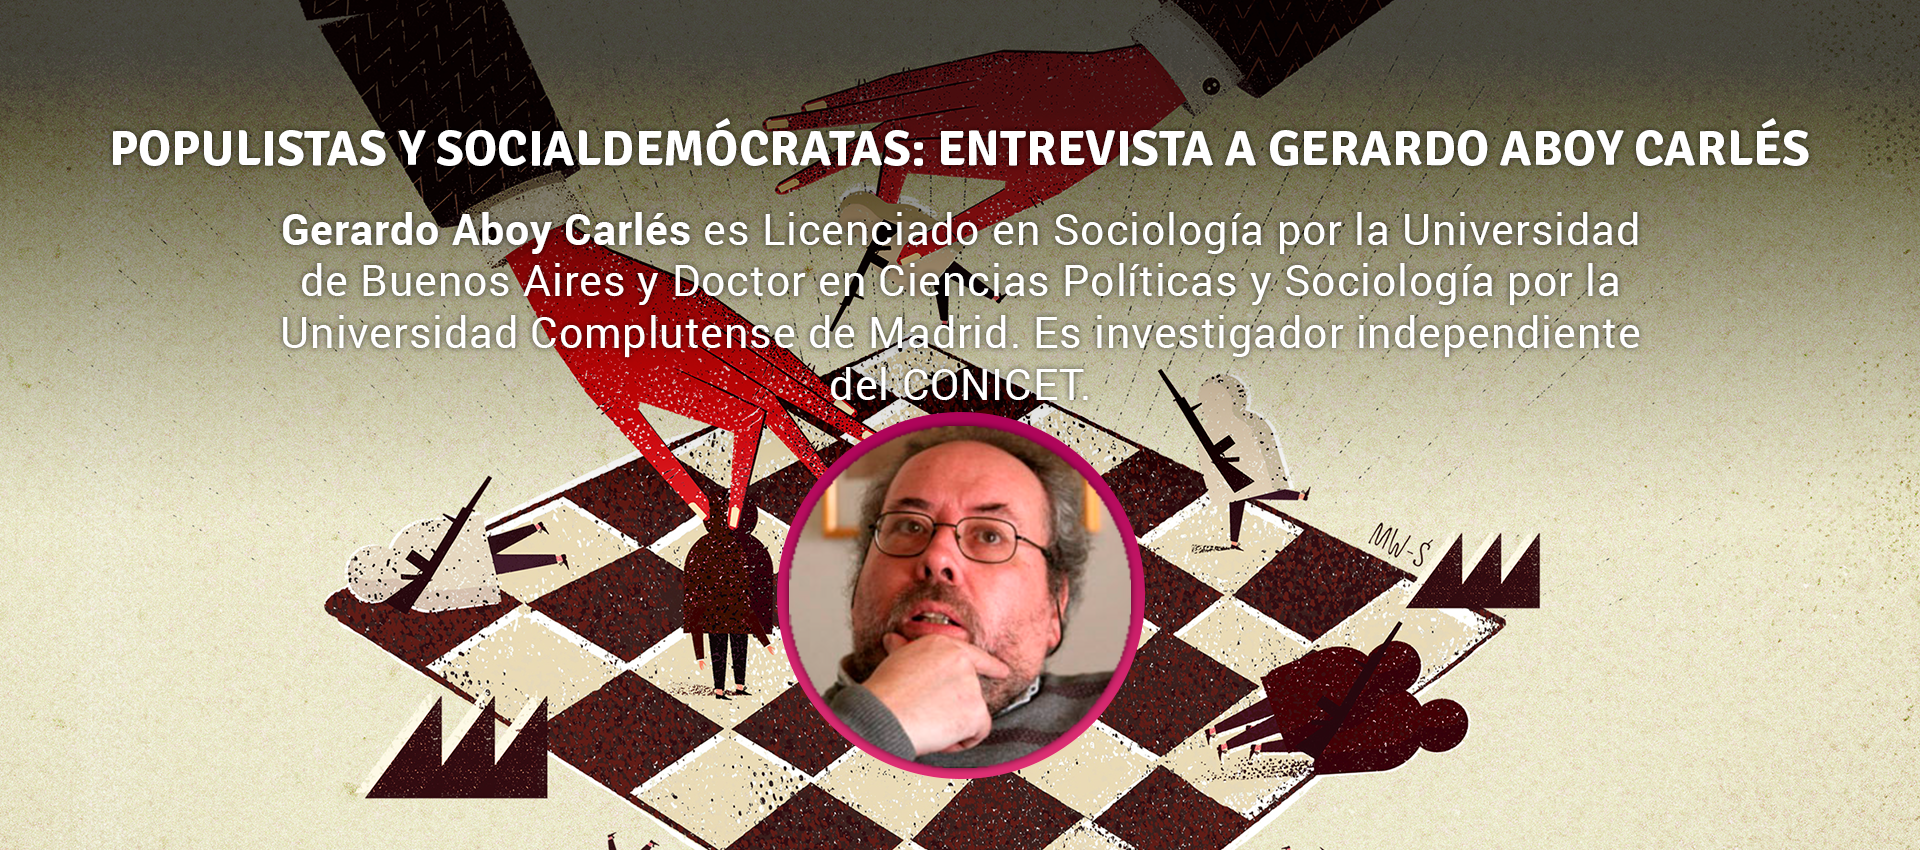 Gerardo Aboy Carles - POPULISTAS Y SOCIALDEMÓCRATAS: ENTREVISTA A GERARDO ABOY CARLÉS